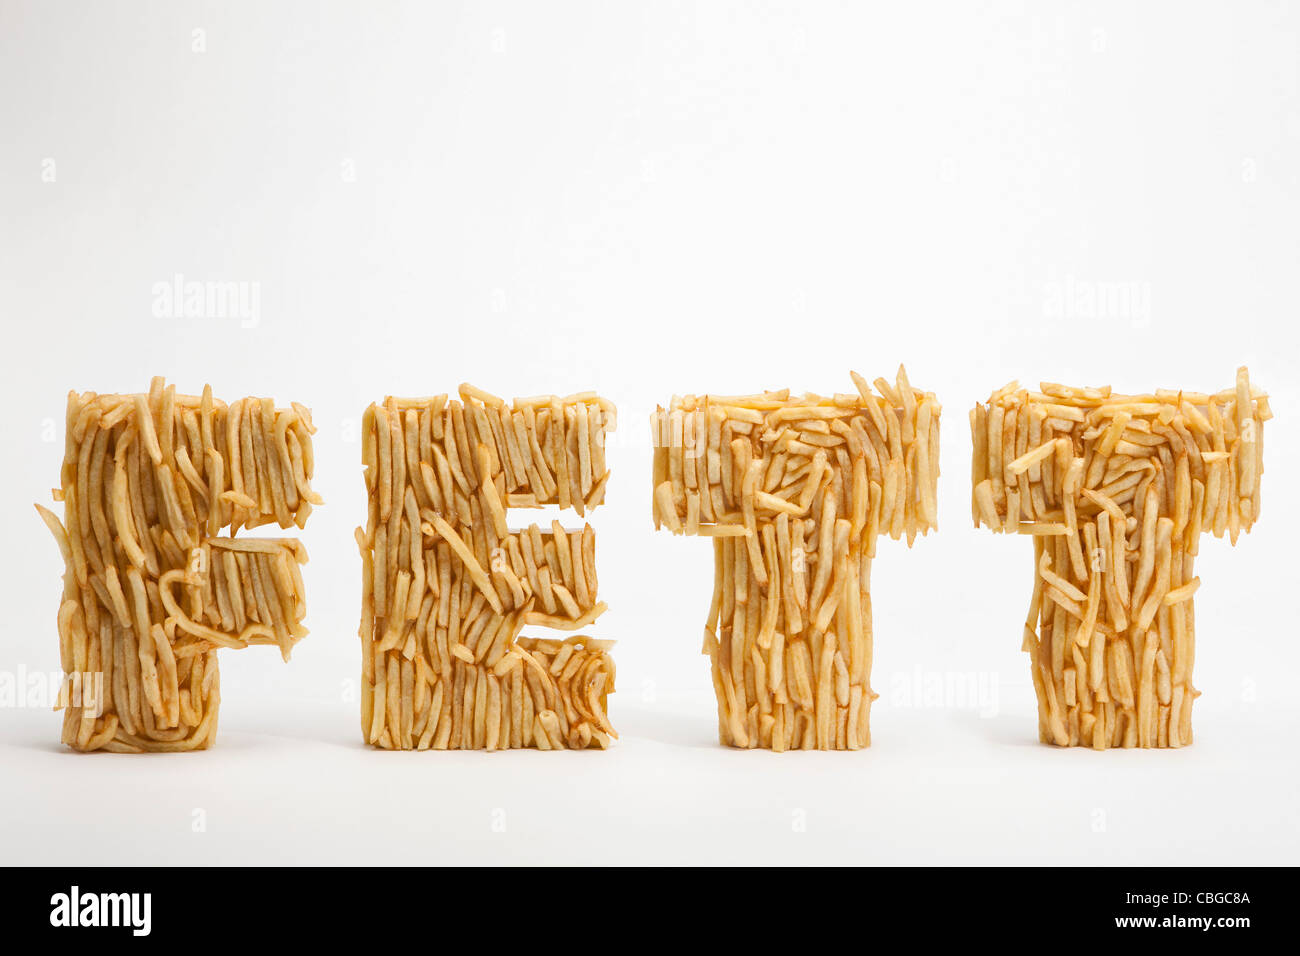 Patate fritte stampate per rendere la parola FETT, la parola tedesca per il grasso Foto Stock